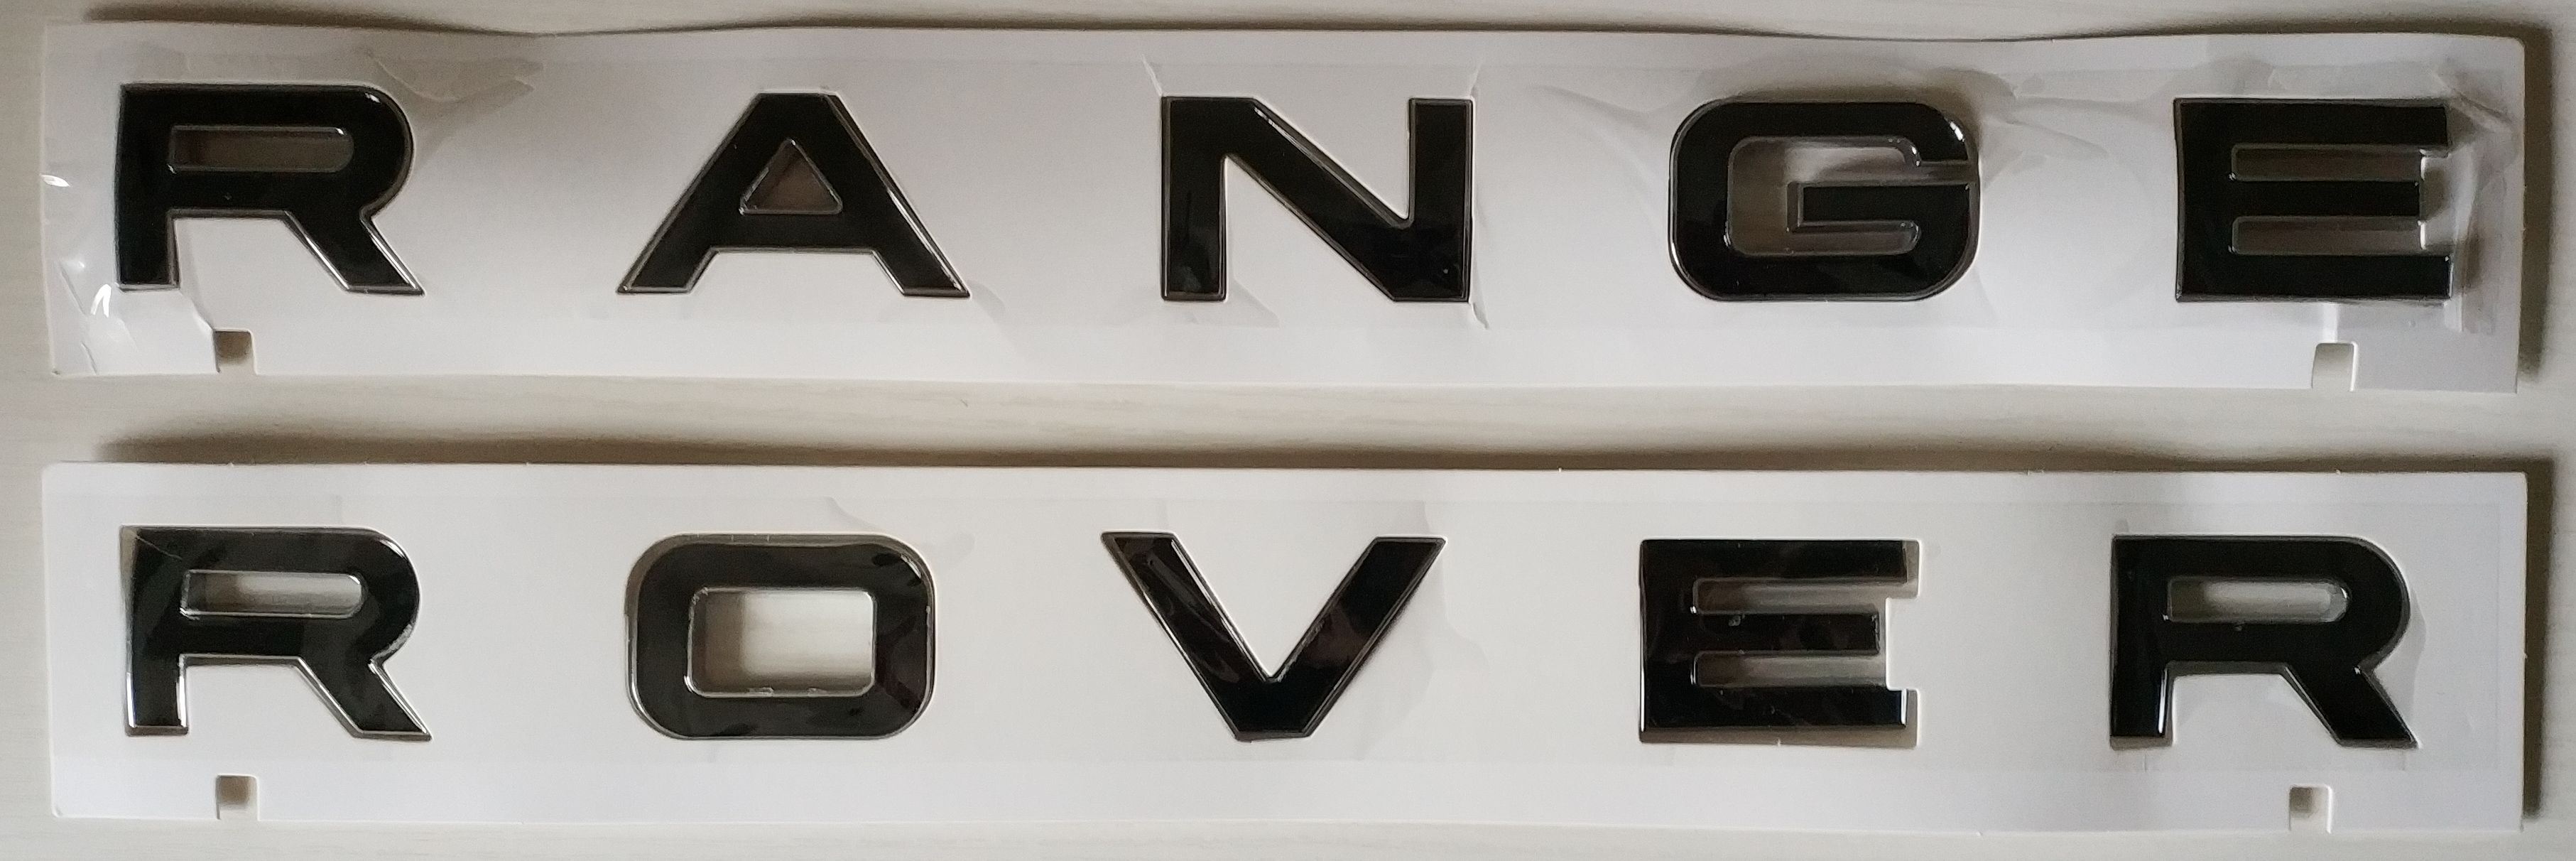 Надпись на капот багажник Range Rover